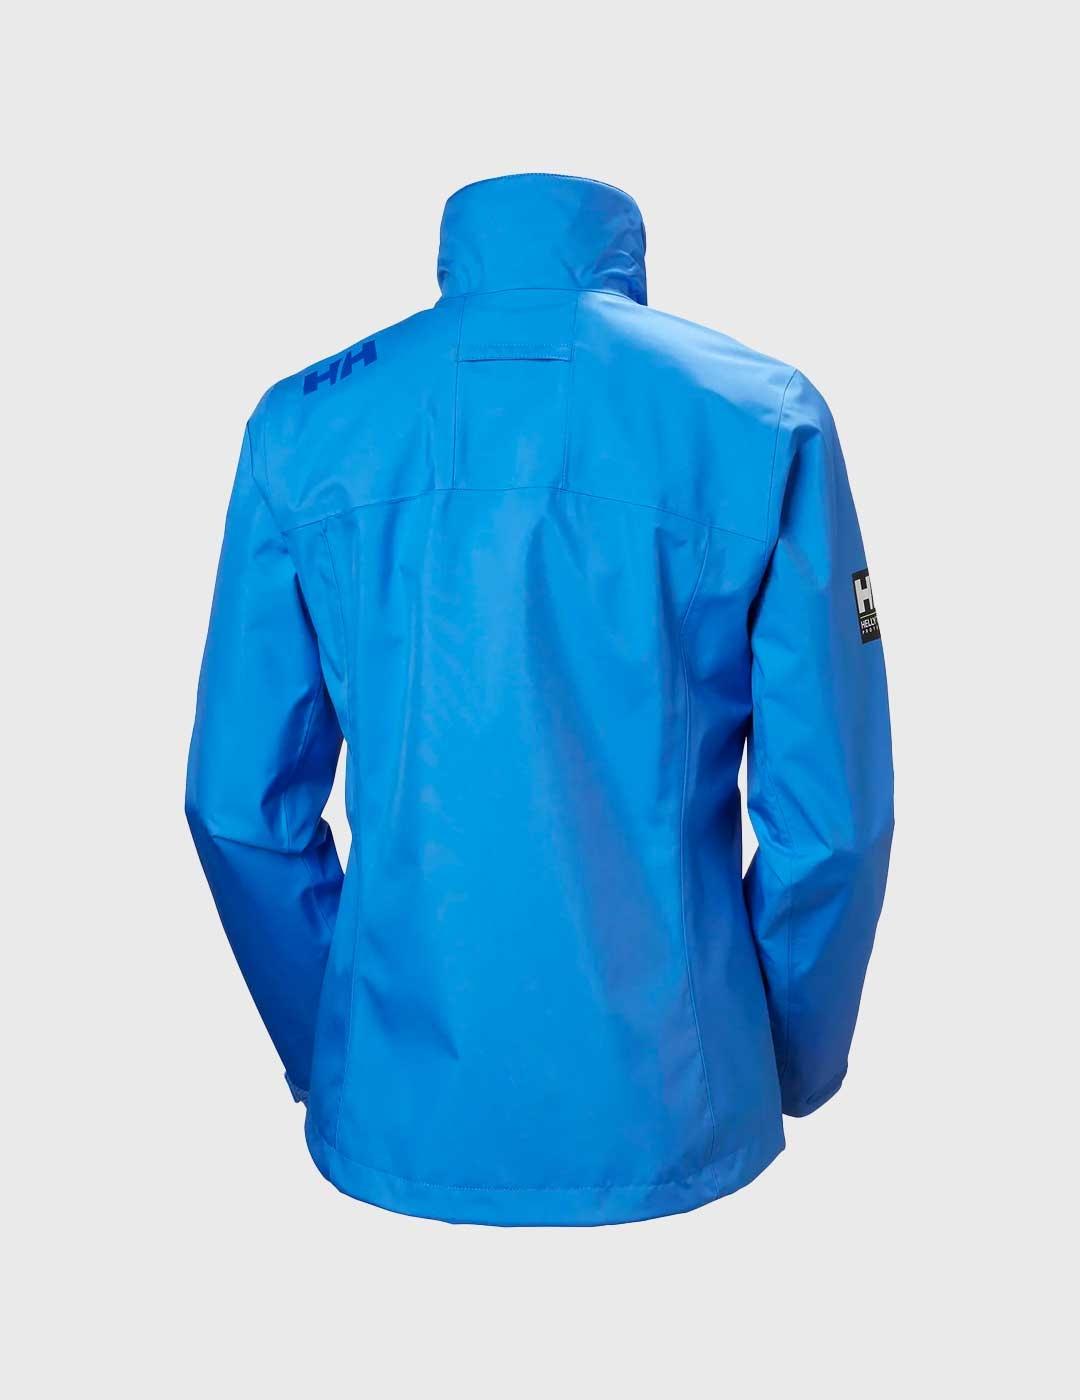 Chaqueta Helly Hansen Crew Jacket azul para mujer